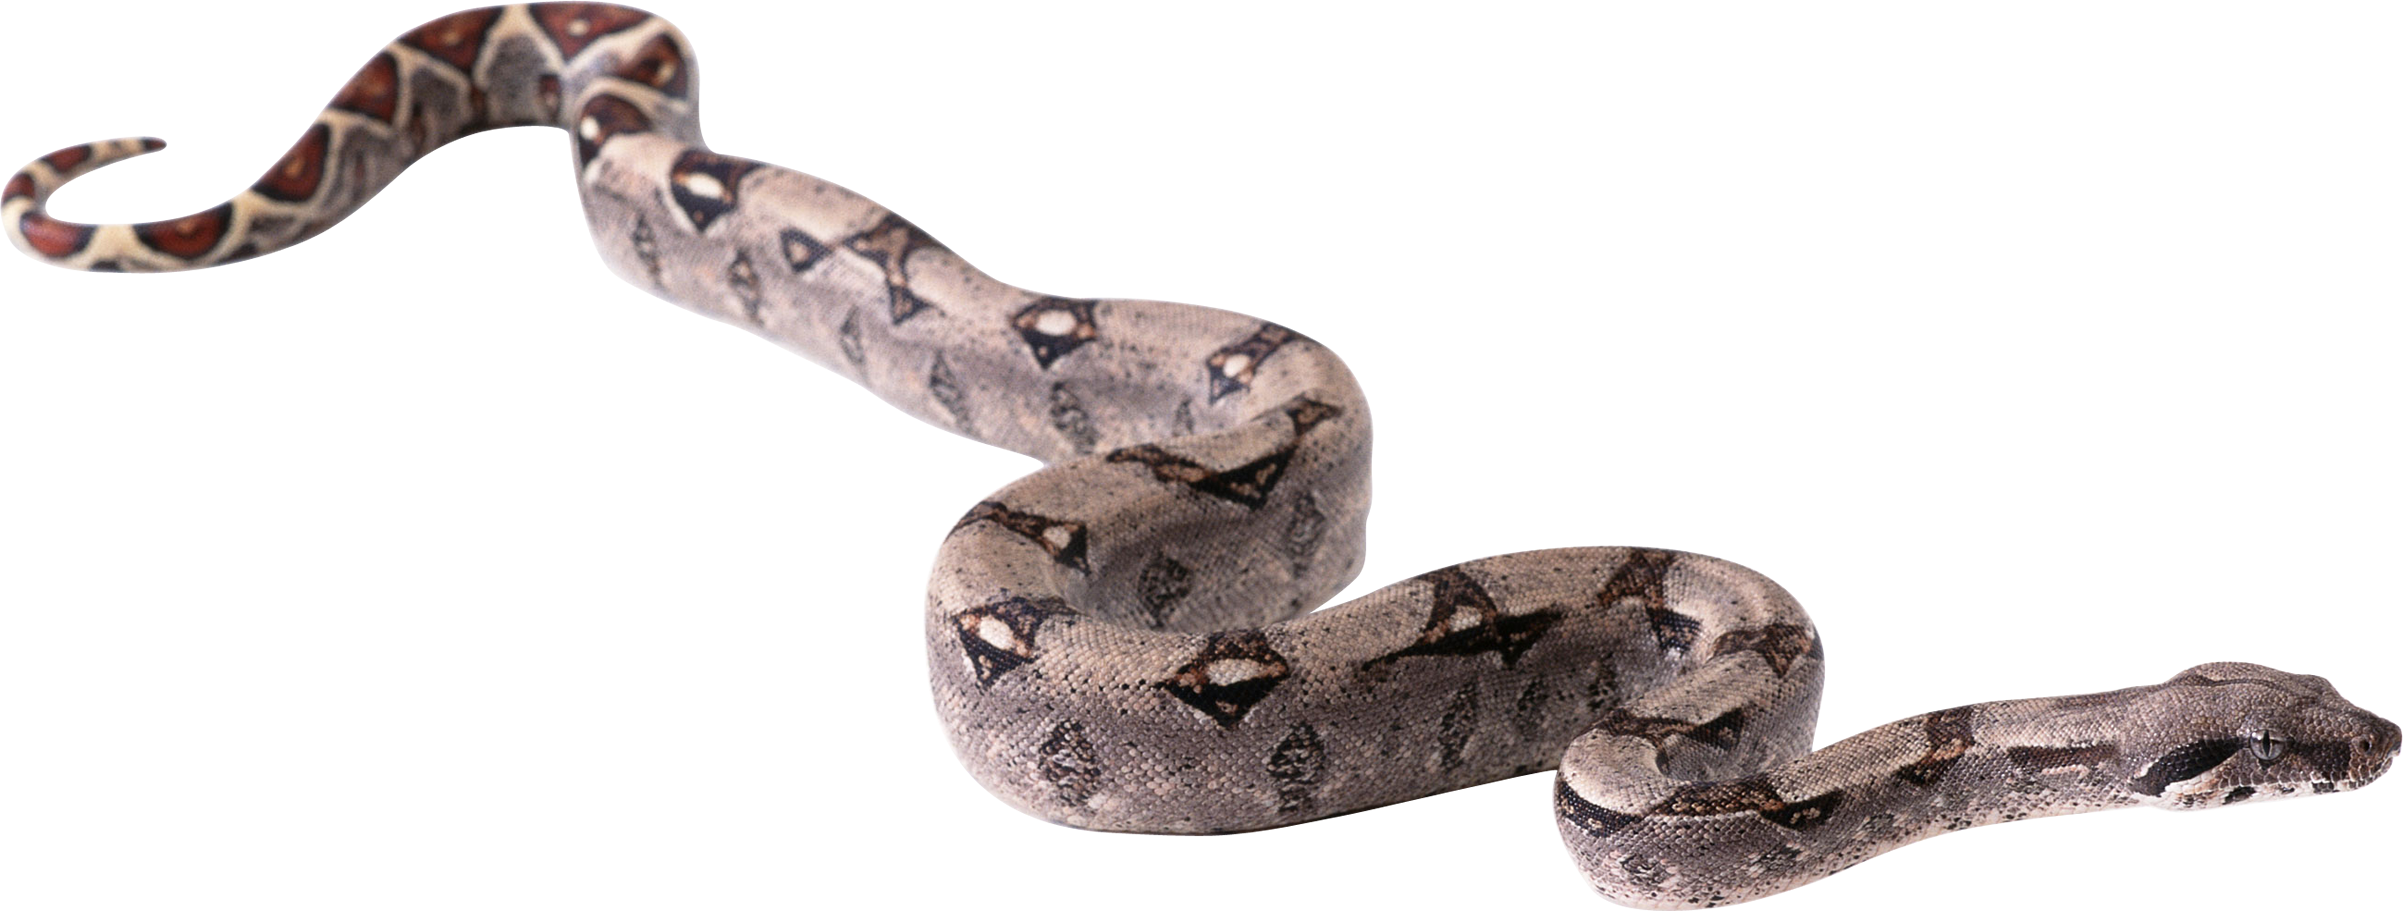 Python Snake PNG - 62154